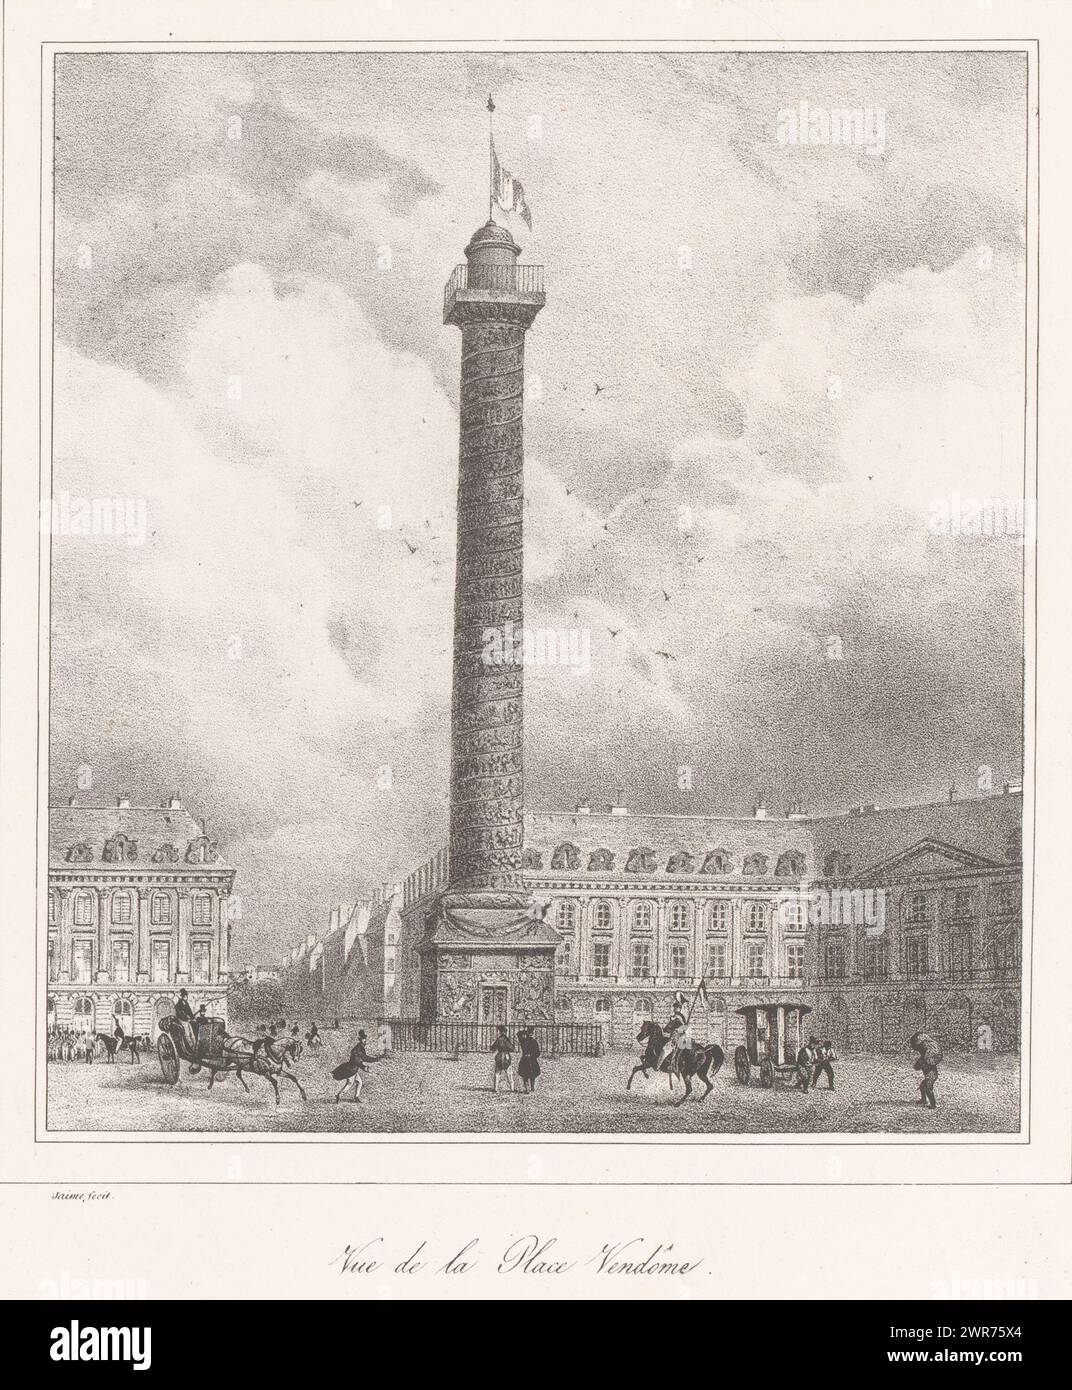 View of the Colonne Vendôme, Vue de la Place Vendôme (title on object), print maker: Ernest Jaime, publisher: Giraldon-Bovinet & Cie., Paris, 1828, paper, height 352 mm × width 271 mm, print Stock Photo